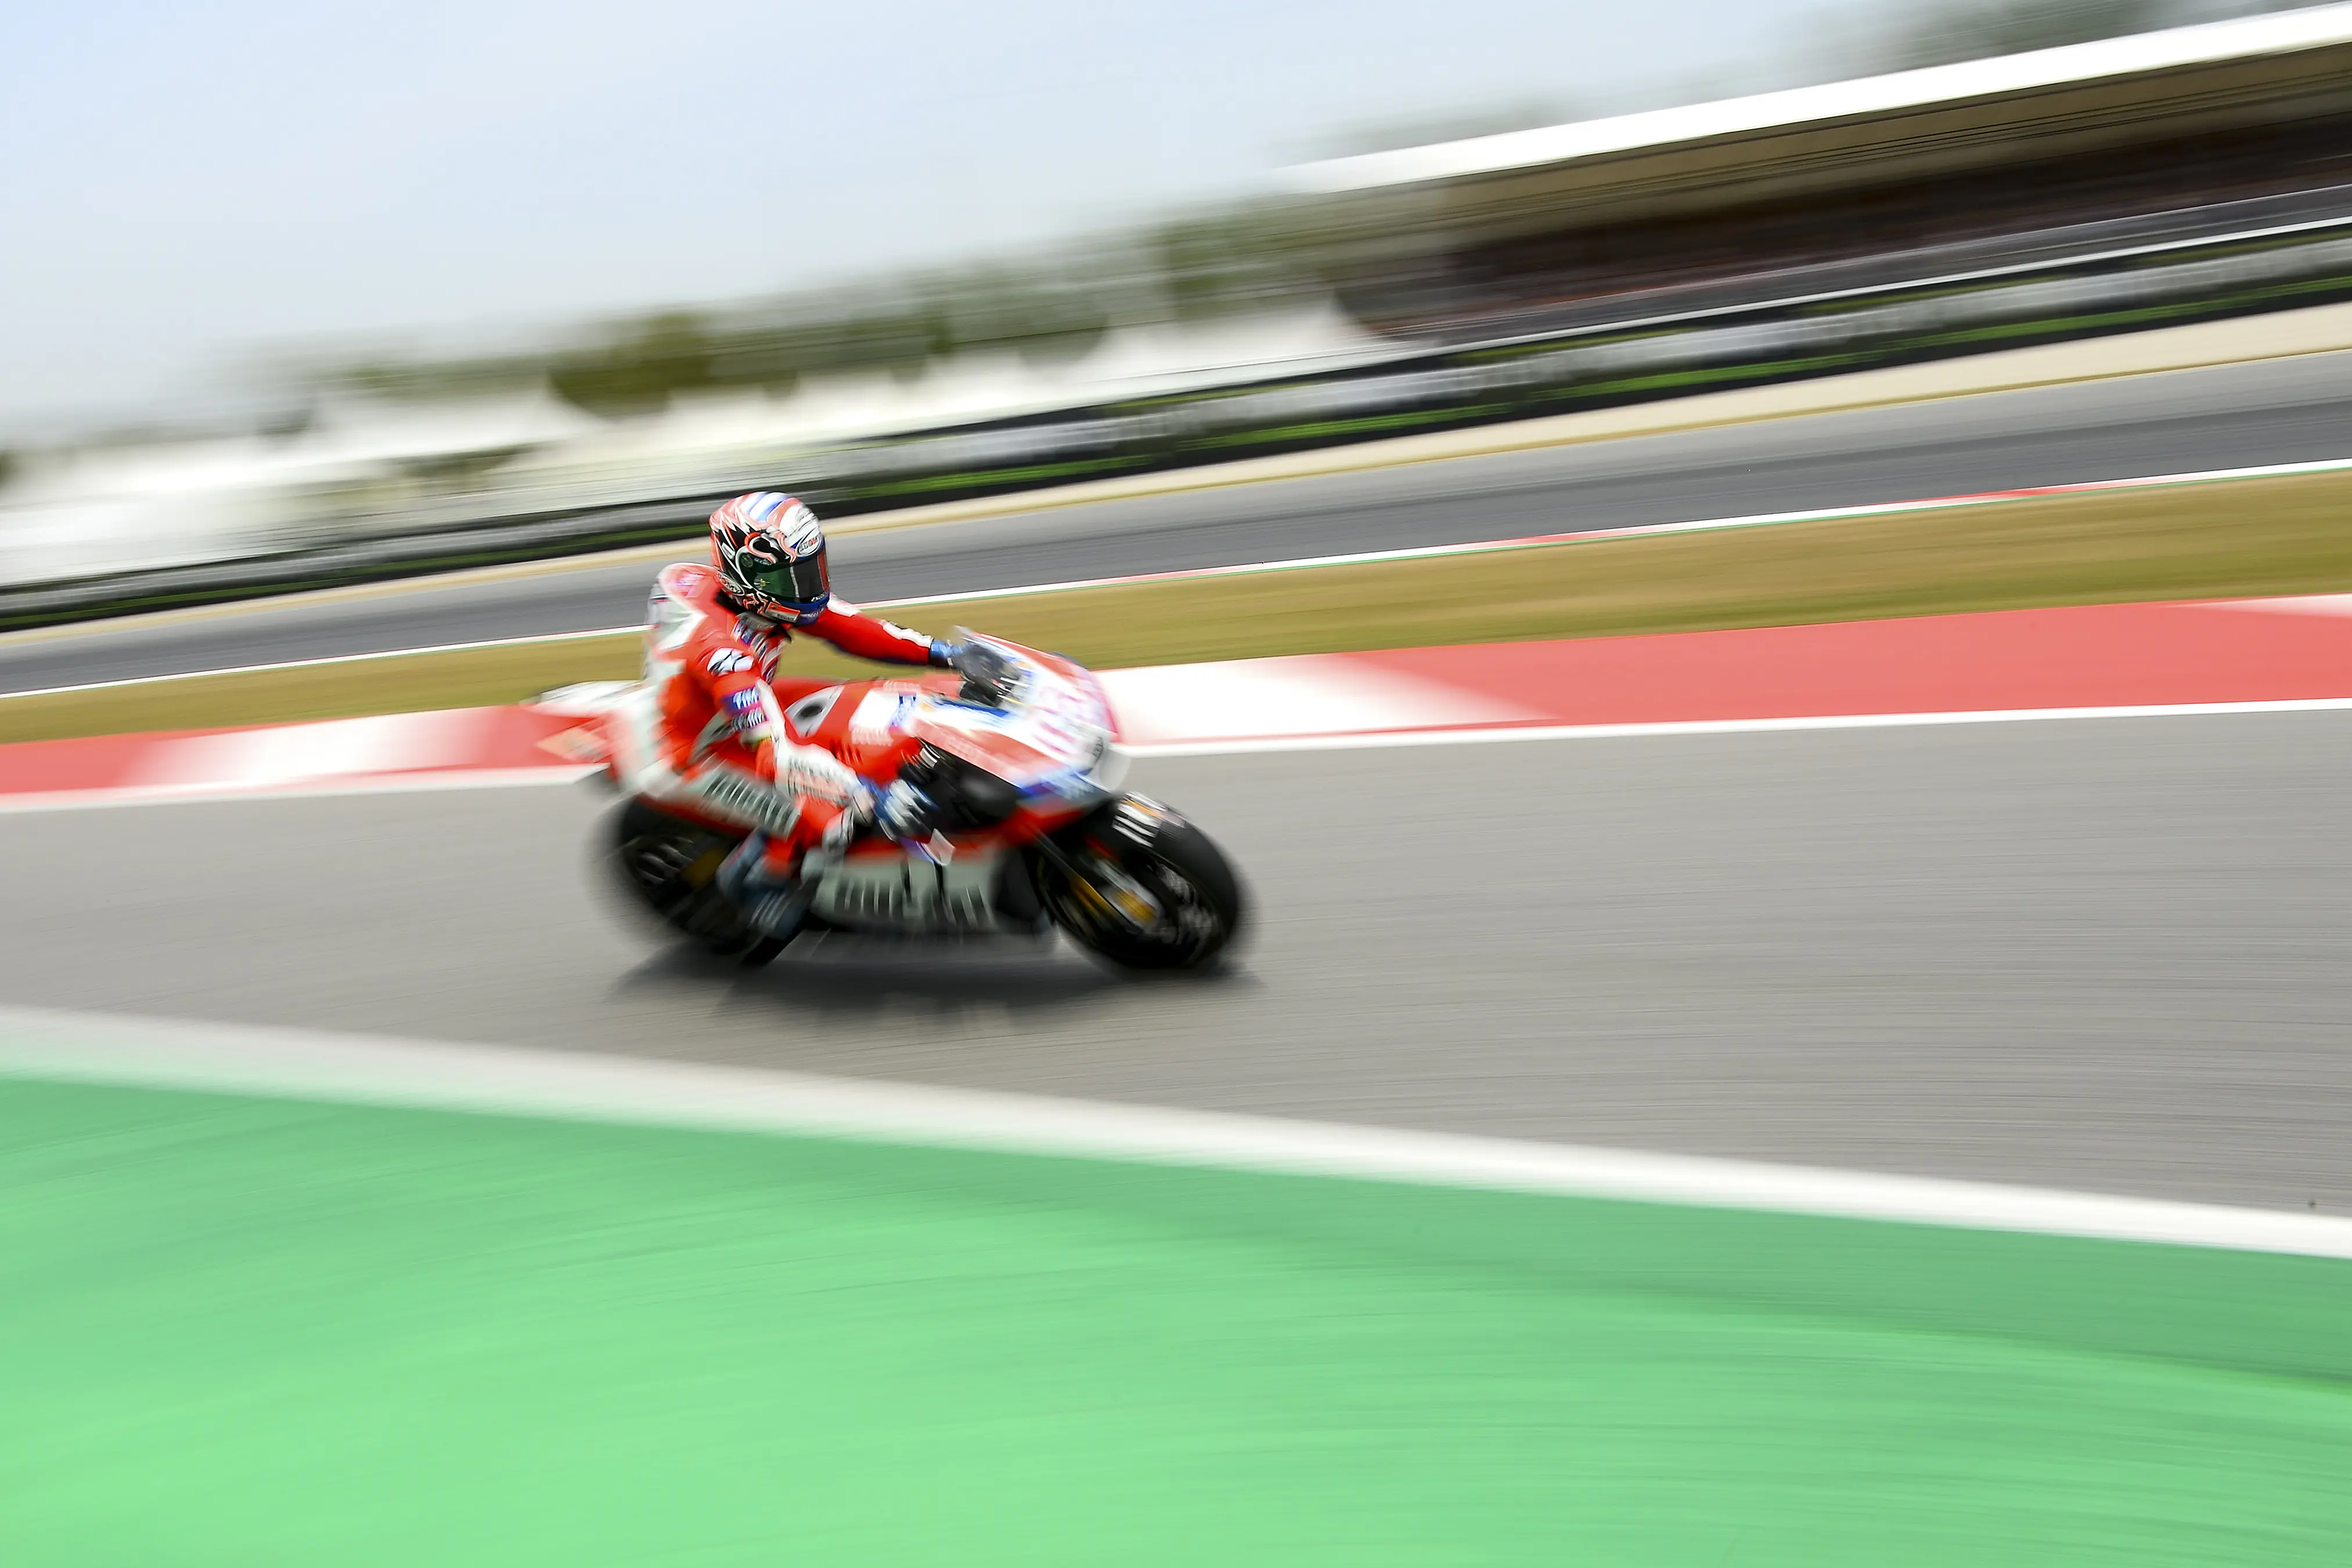 Pembalap Ducati, Andrea Dovizioso tampil cukup kompetitif pada latihan bebas MotoGP Catalunya 2017. (Josep LAGO / AFP)